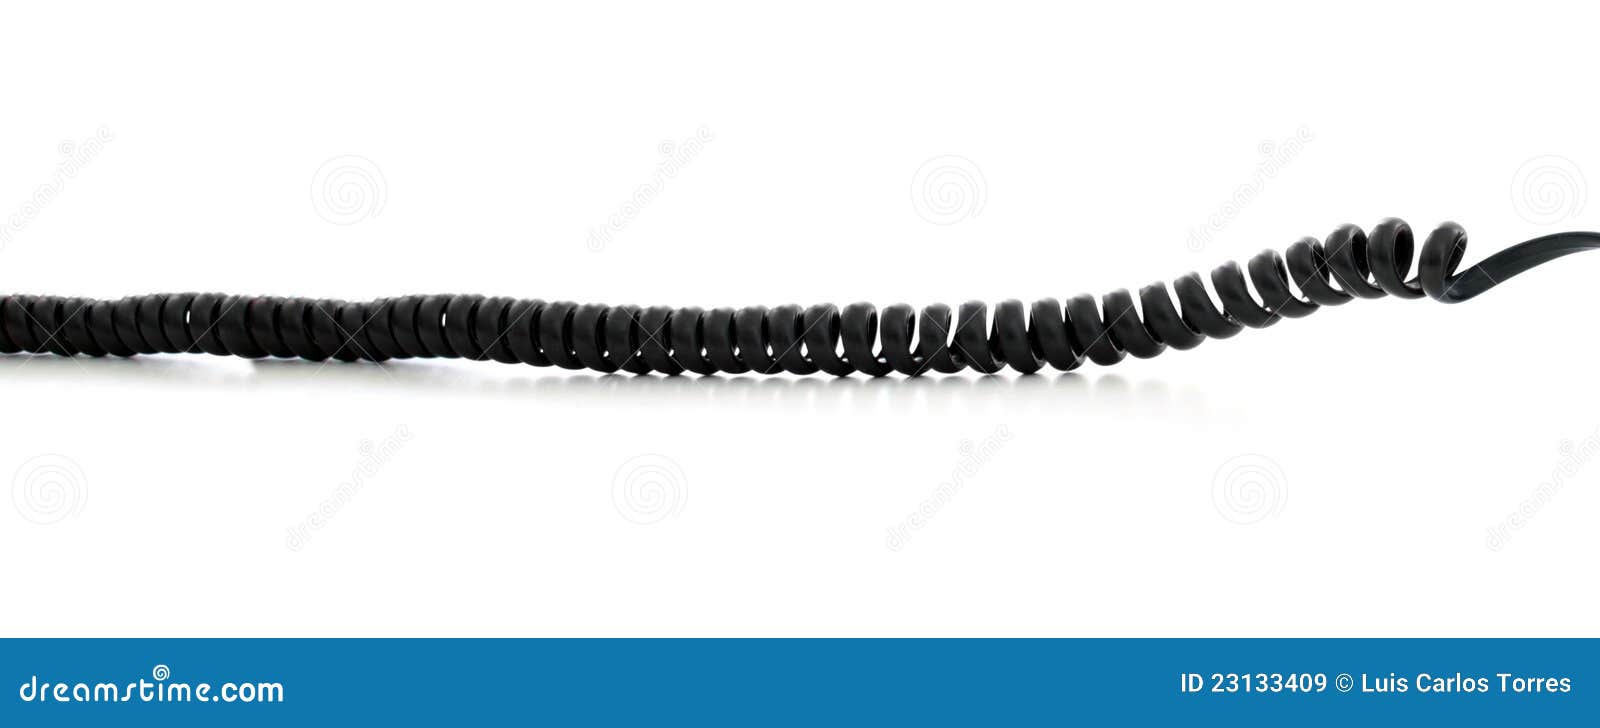 Phone cord stock image. Image of communication, phone - 23133409